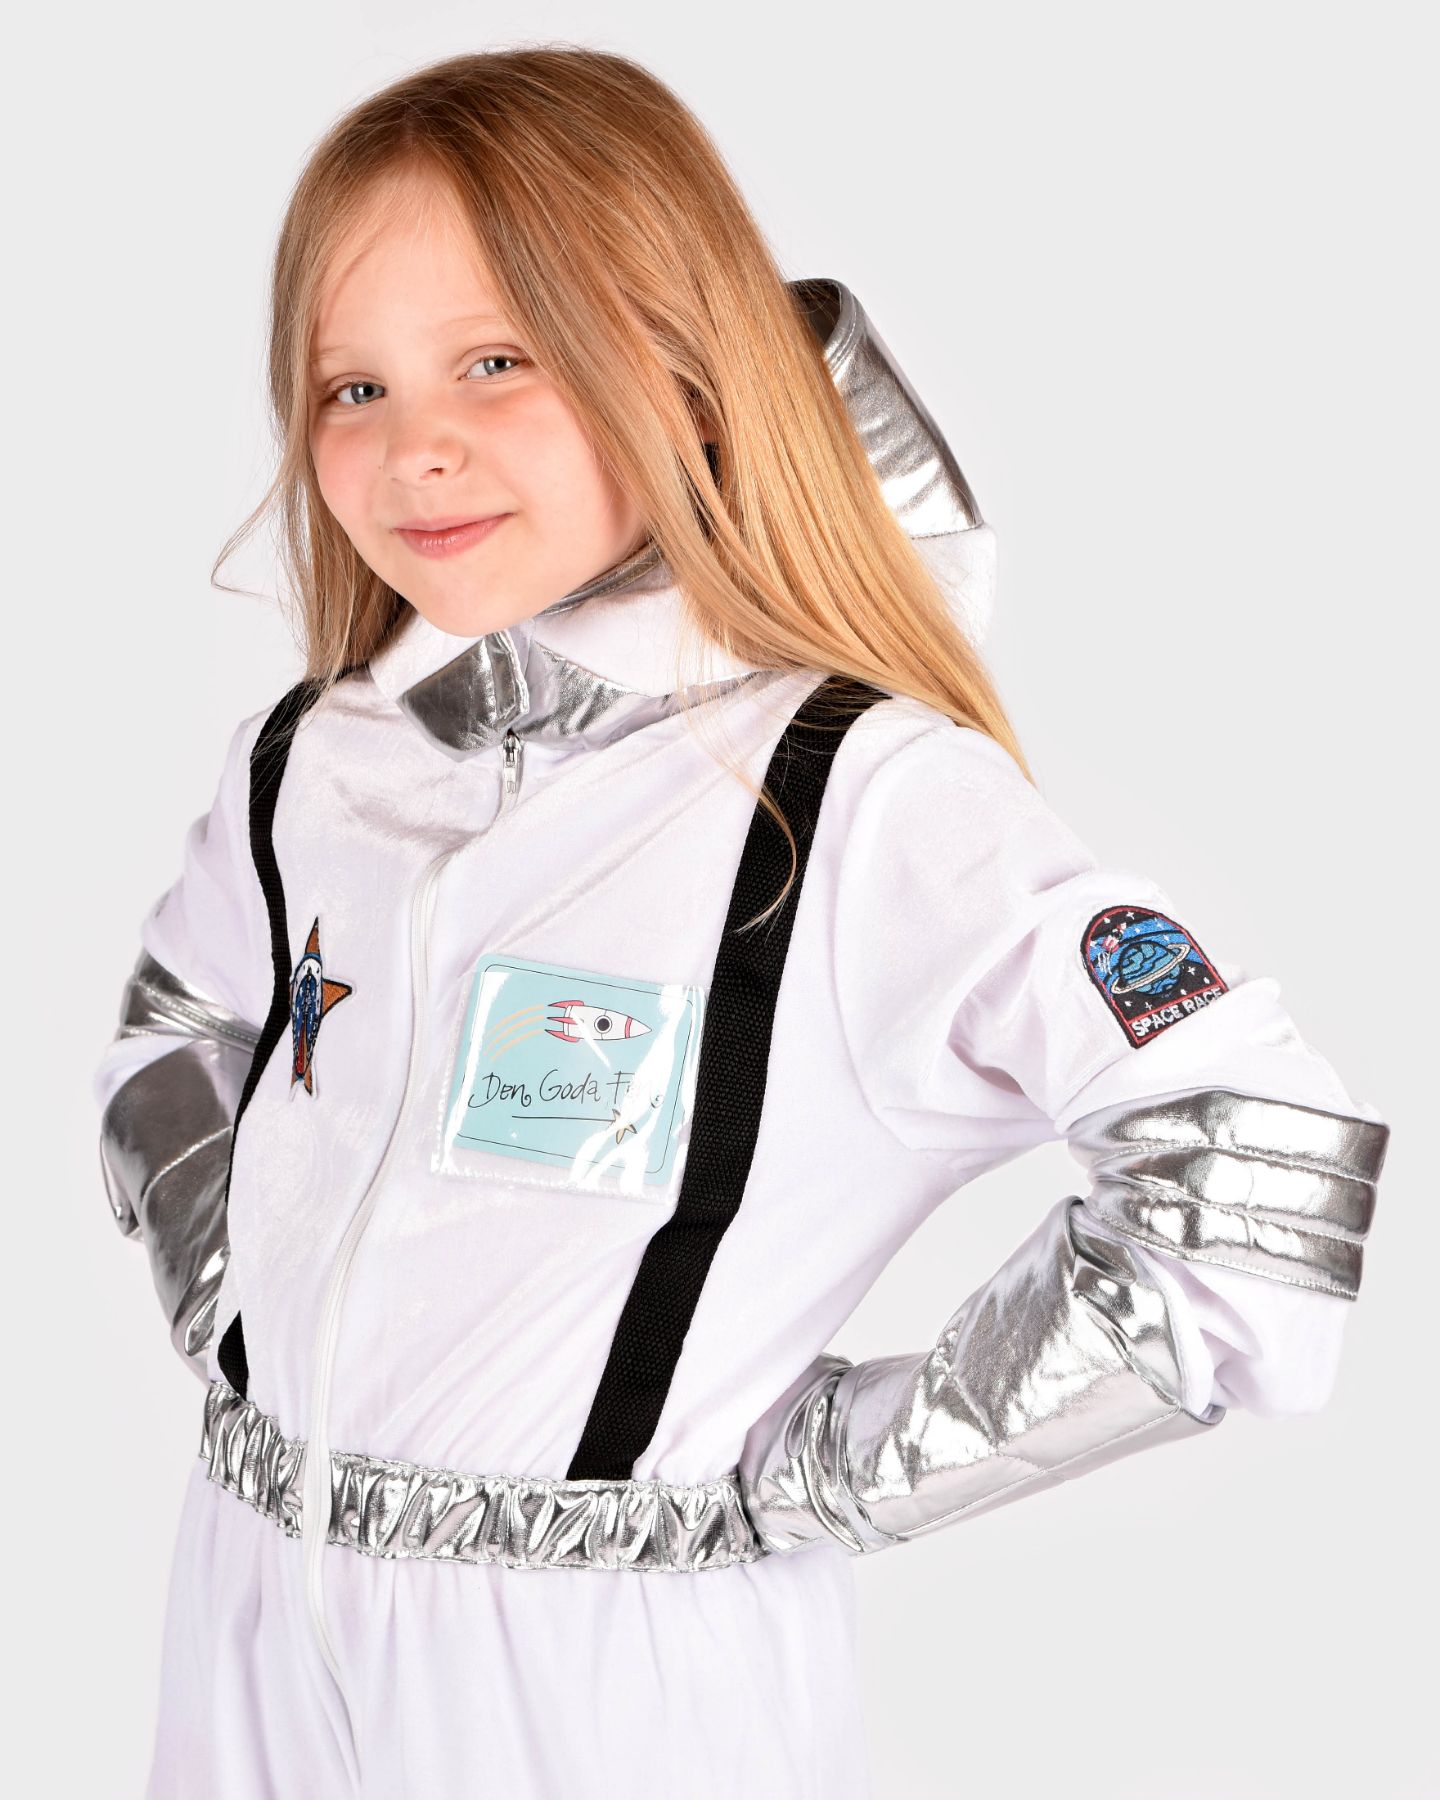 Flicka som bär en vit astronautdräkt med svarta och silvriga detaljer